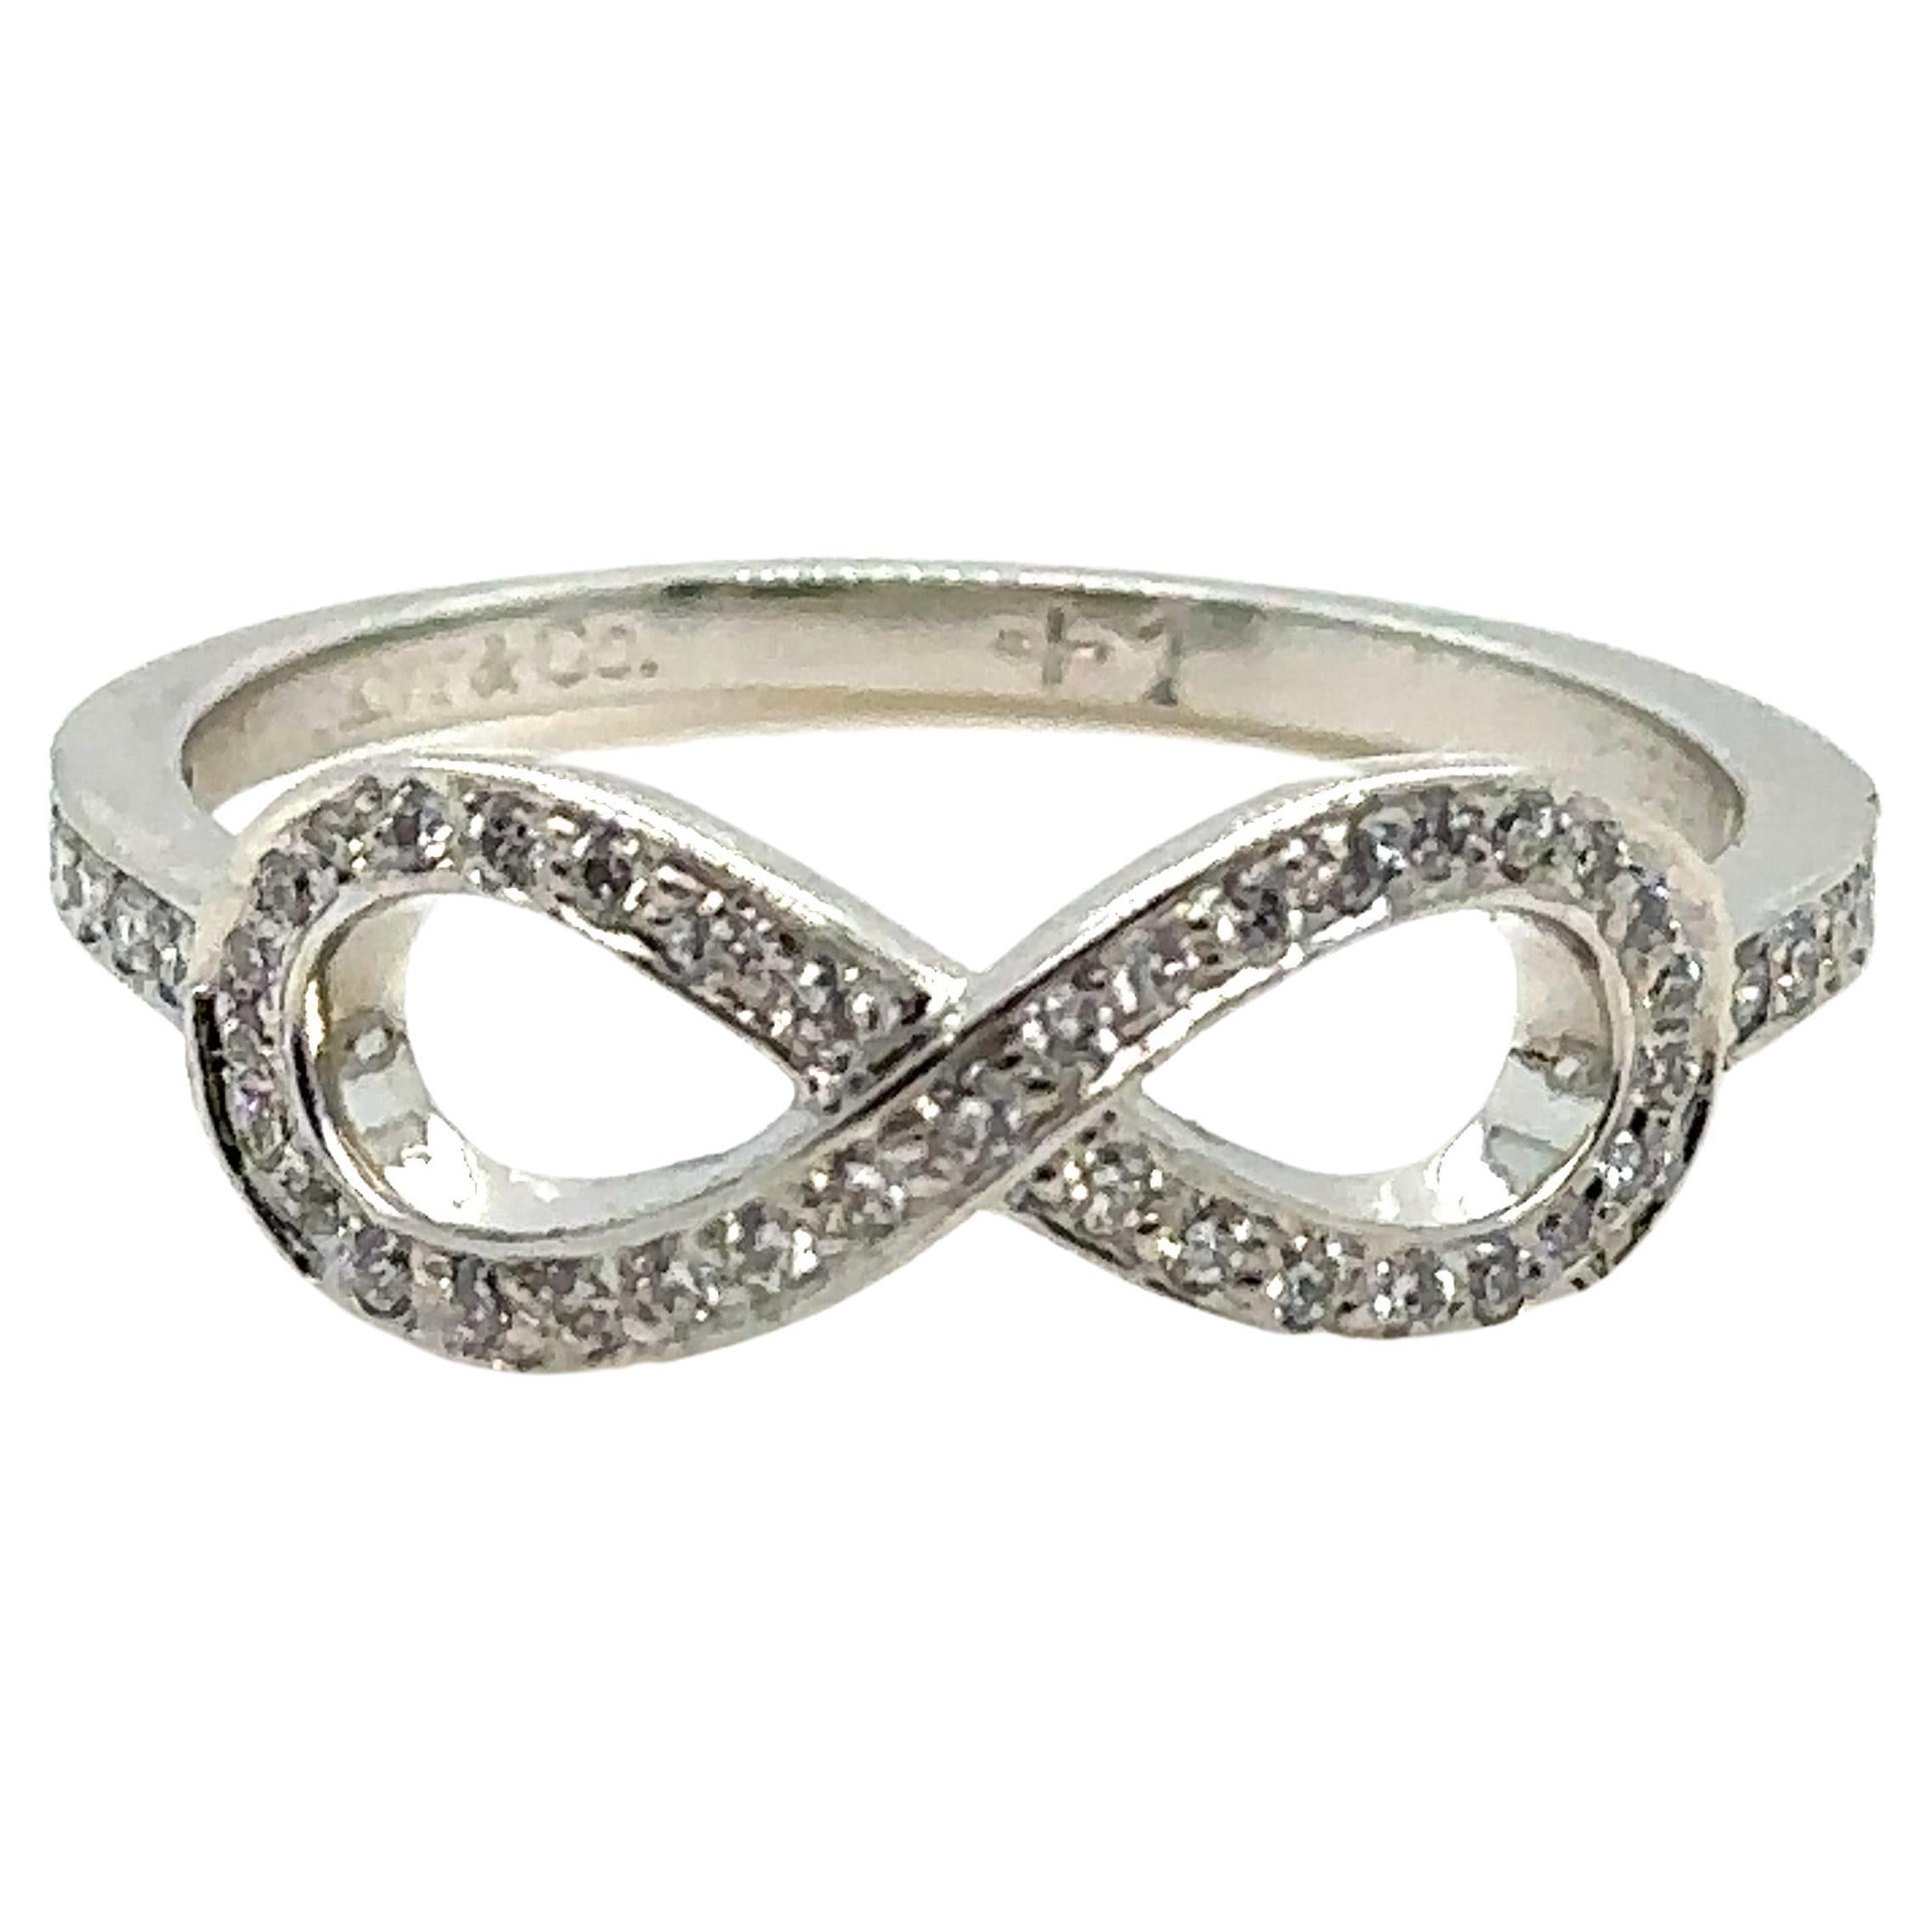 Tiffany & Co Infinity Diamond Ring 0.25 Carat